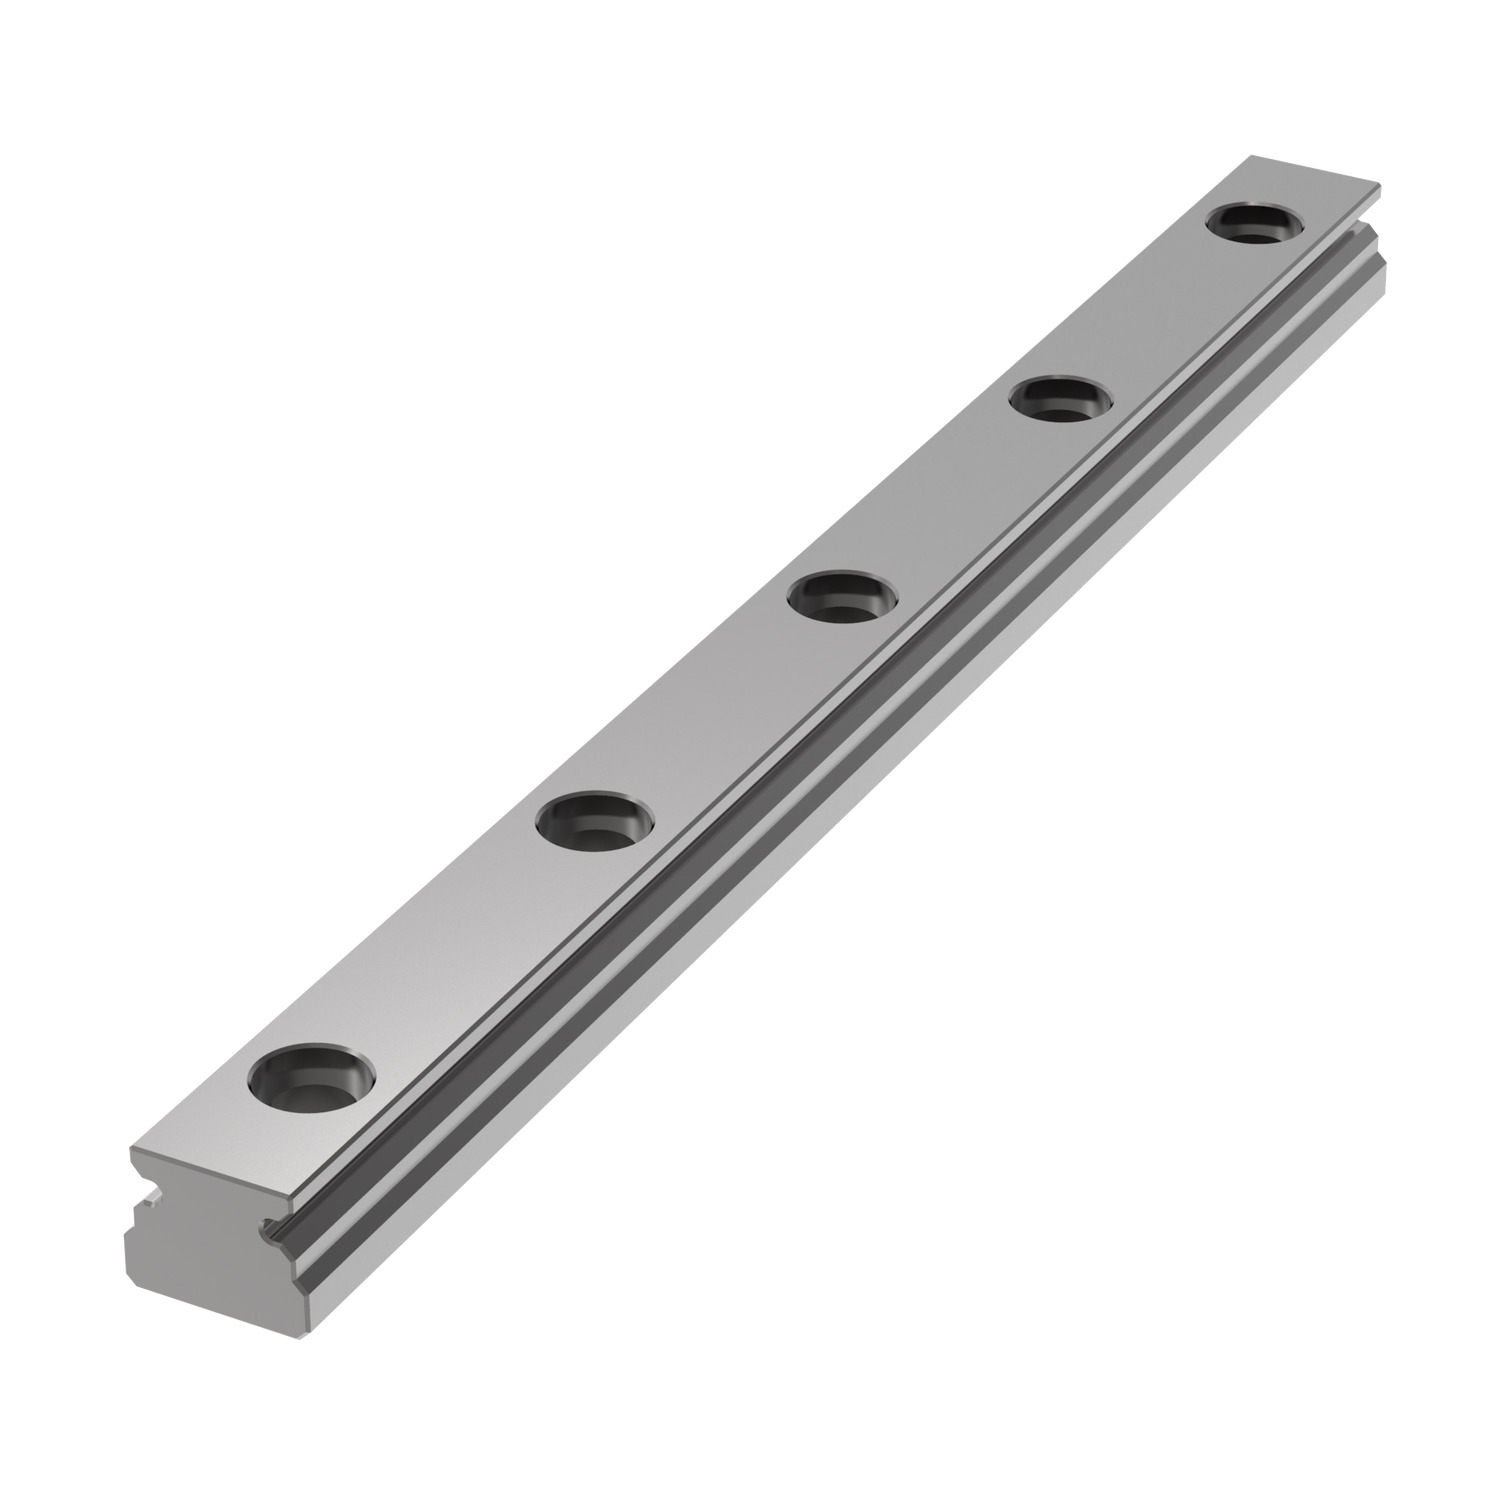 L1010.03 3mm Miniature Linear Rail